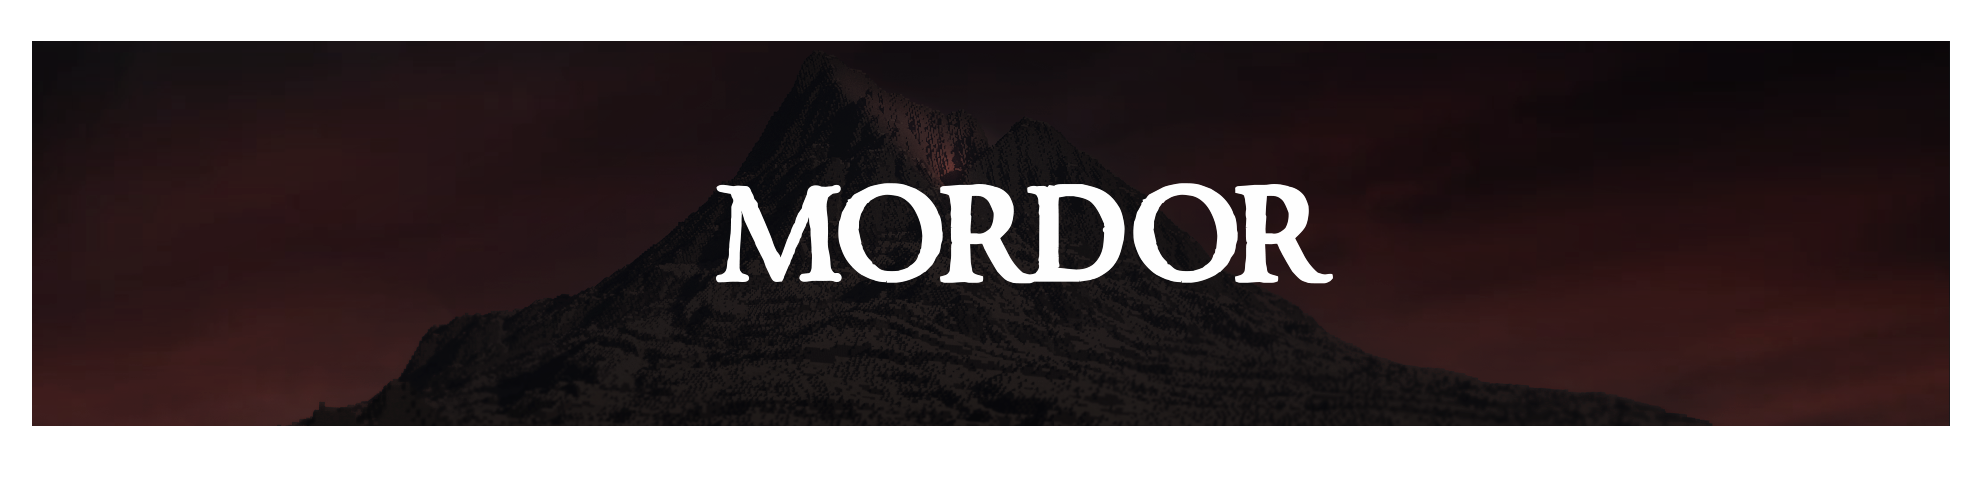 Mordor banner.png